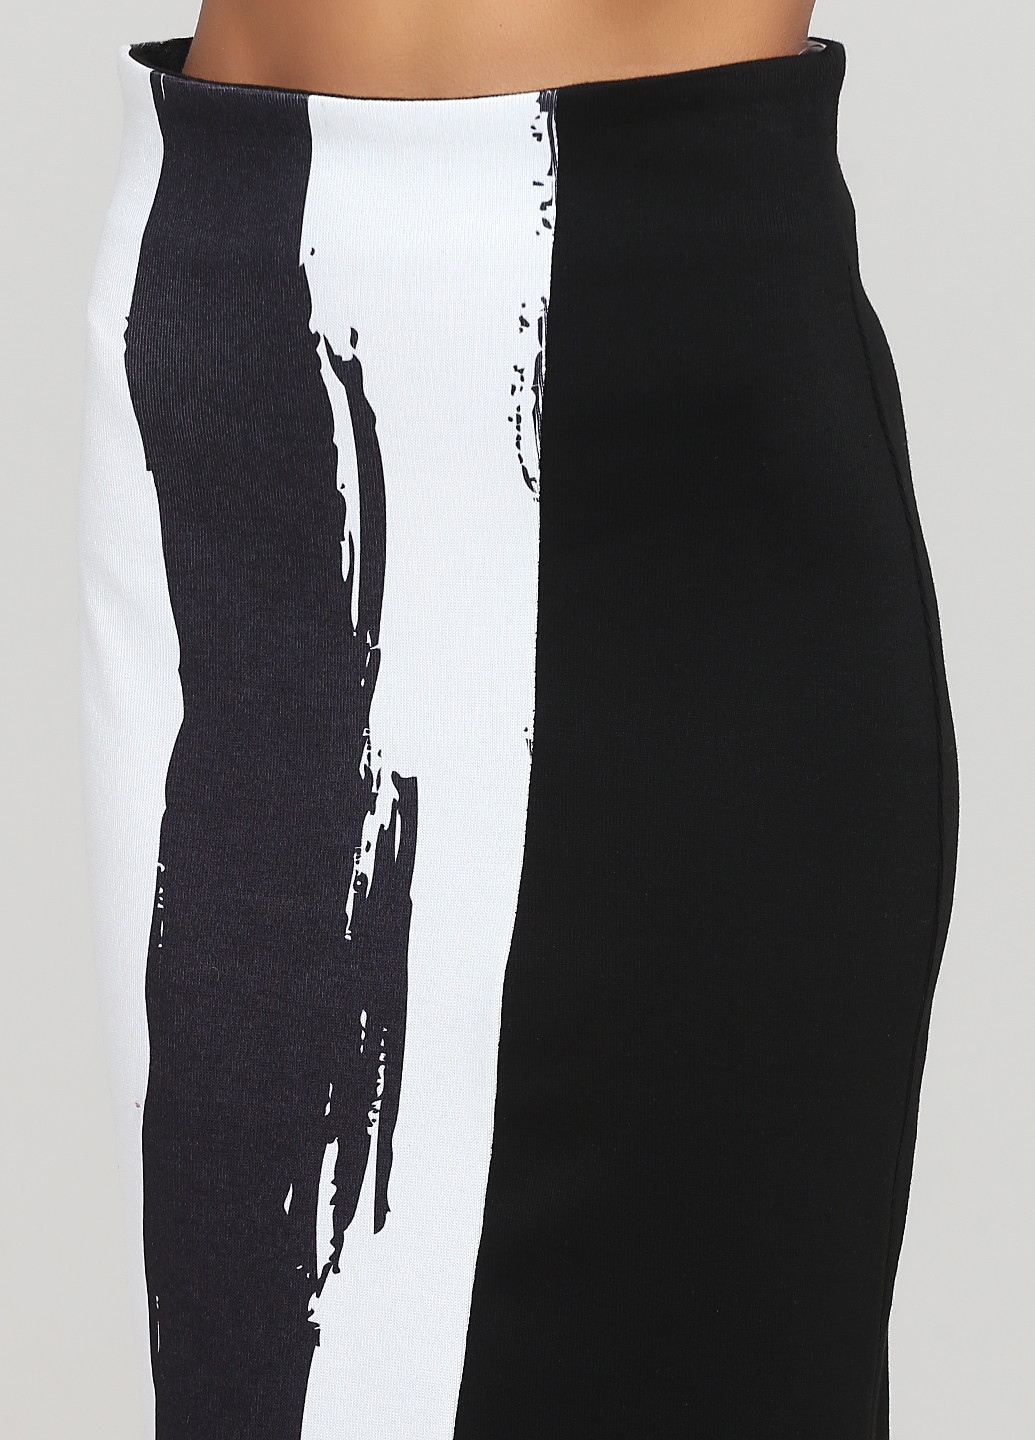 Костюм (джемпер, юбка) Grixmoon юбочный абстрактный чёрный кэжуал полиэстер